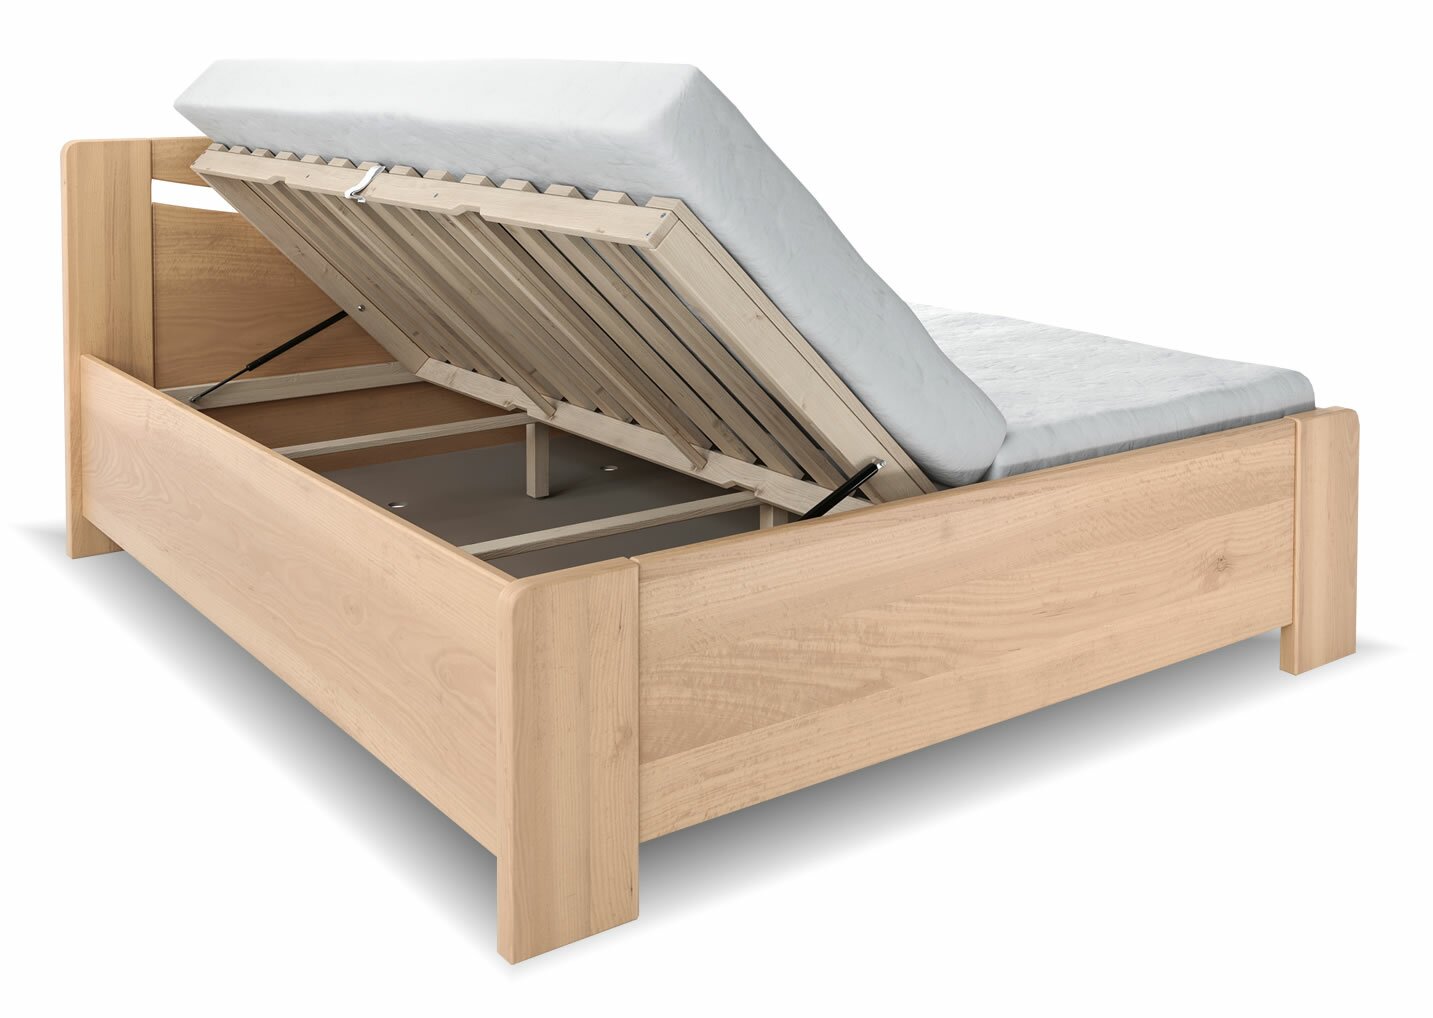 Vysoká dřevěná buková postel s úložným prostorem LINDA, rošty v ceně